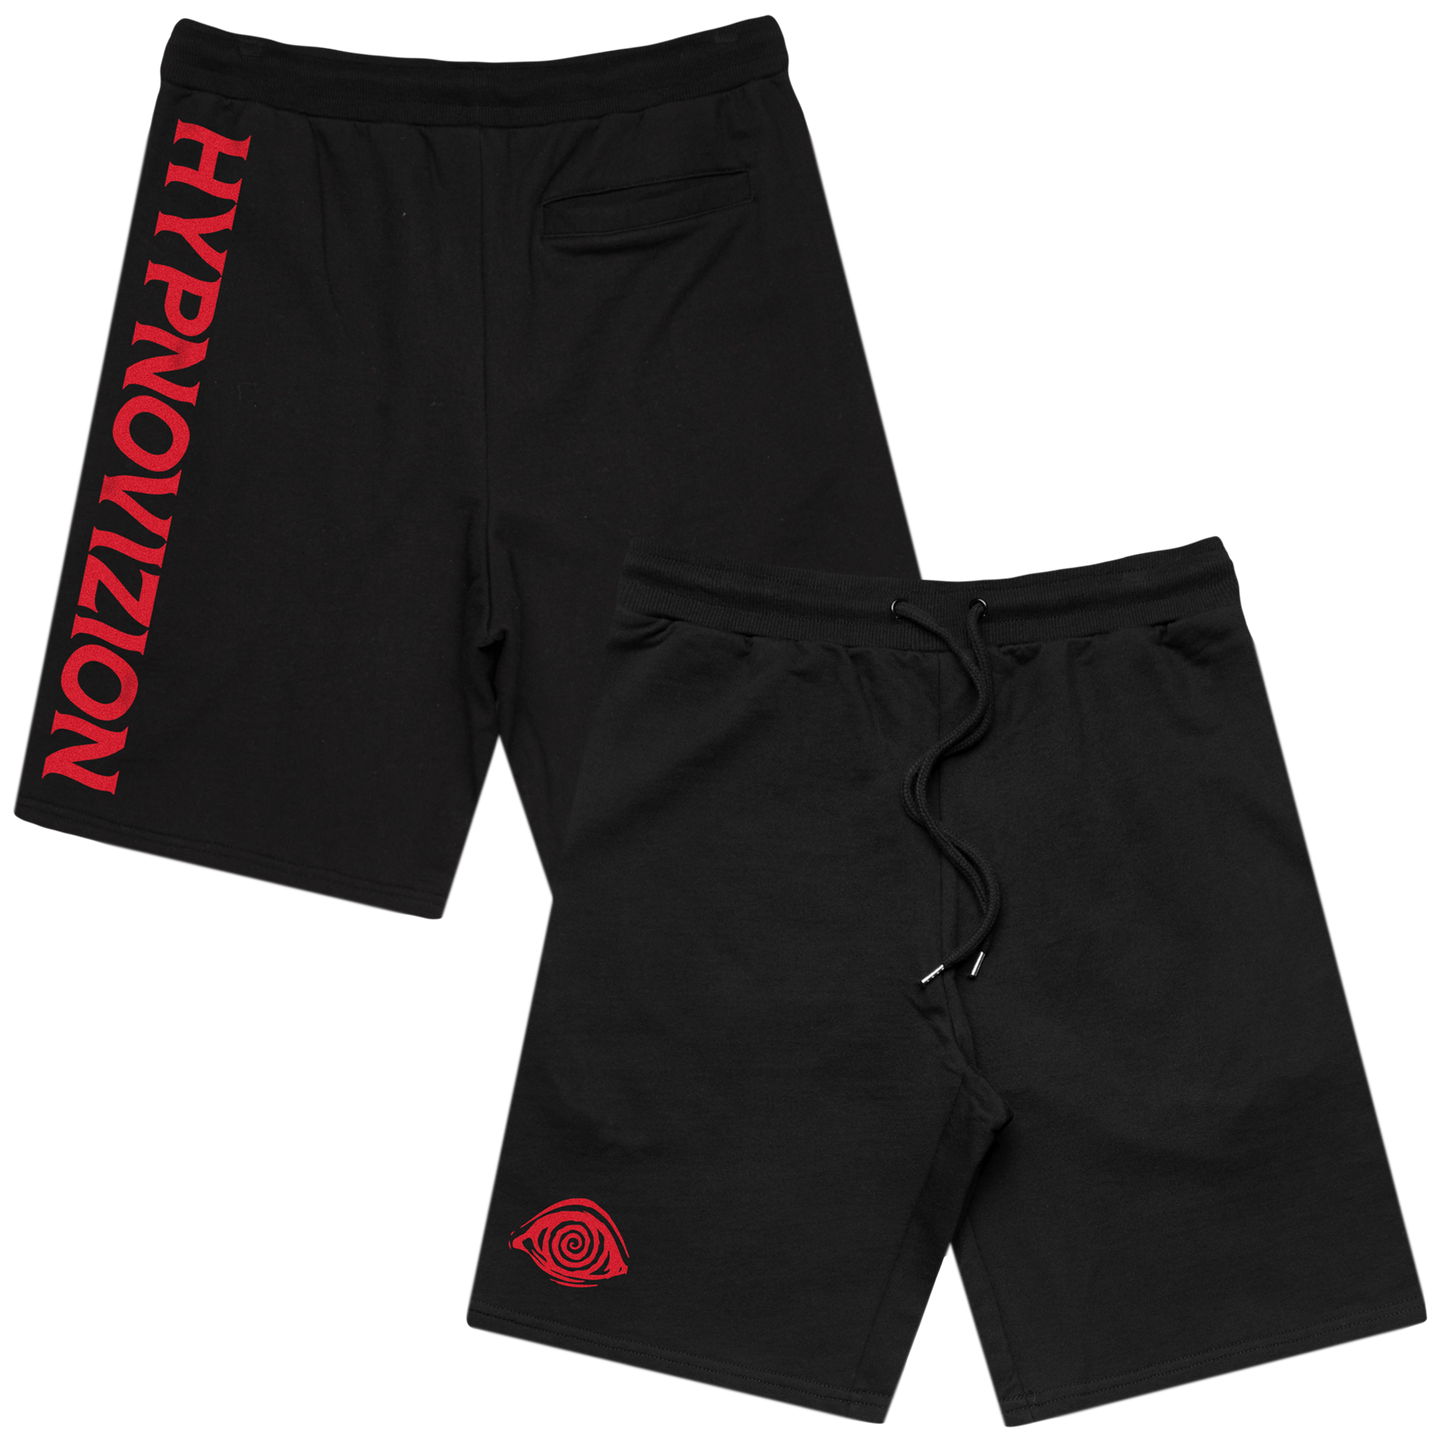 HypnoVizion - Hypno Shorts